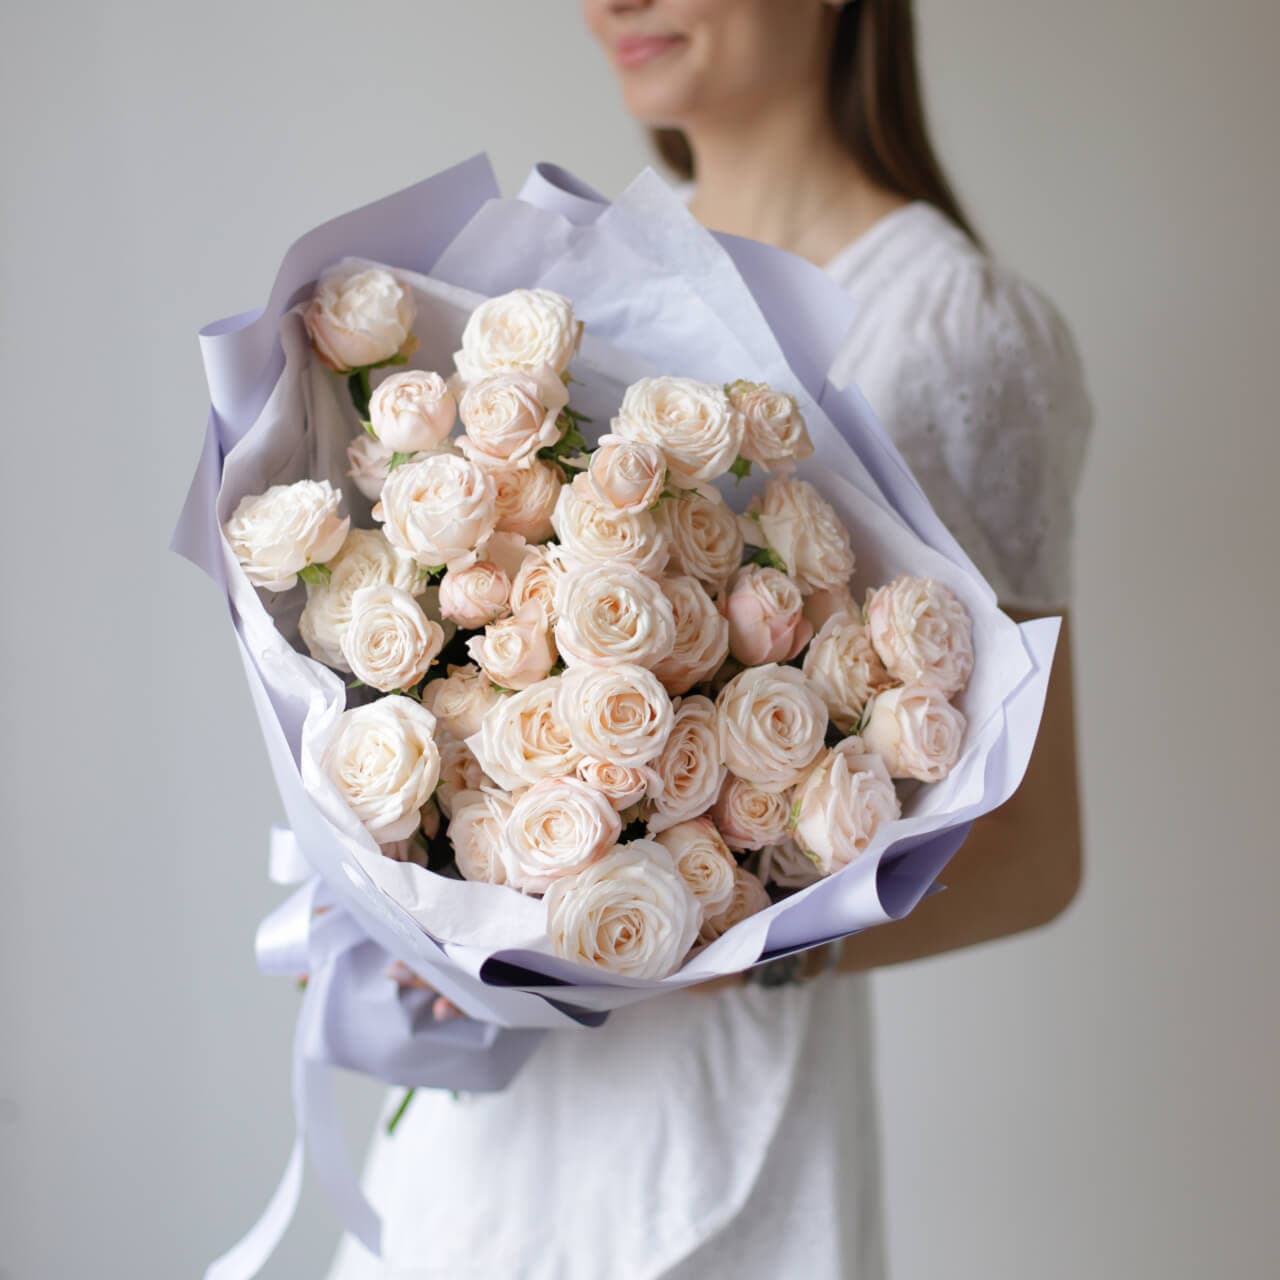 Кустовые пионовидные розы кремового оттенка в лавандовом оформлении №1494 - Фото 26